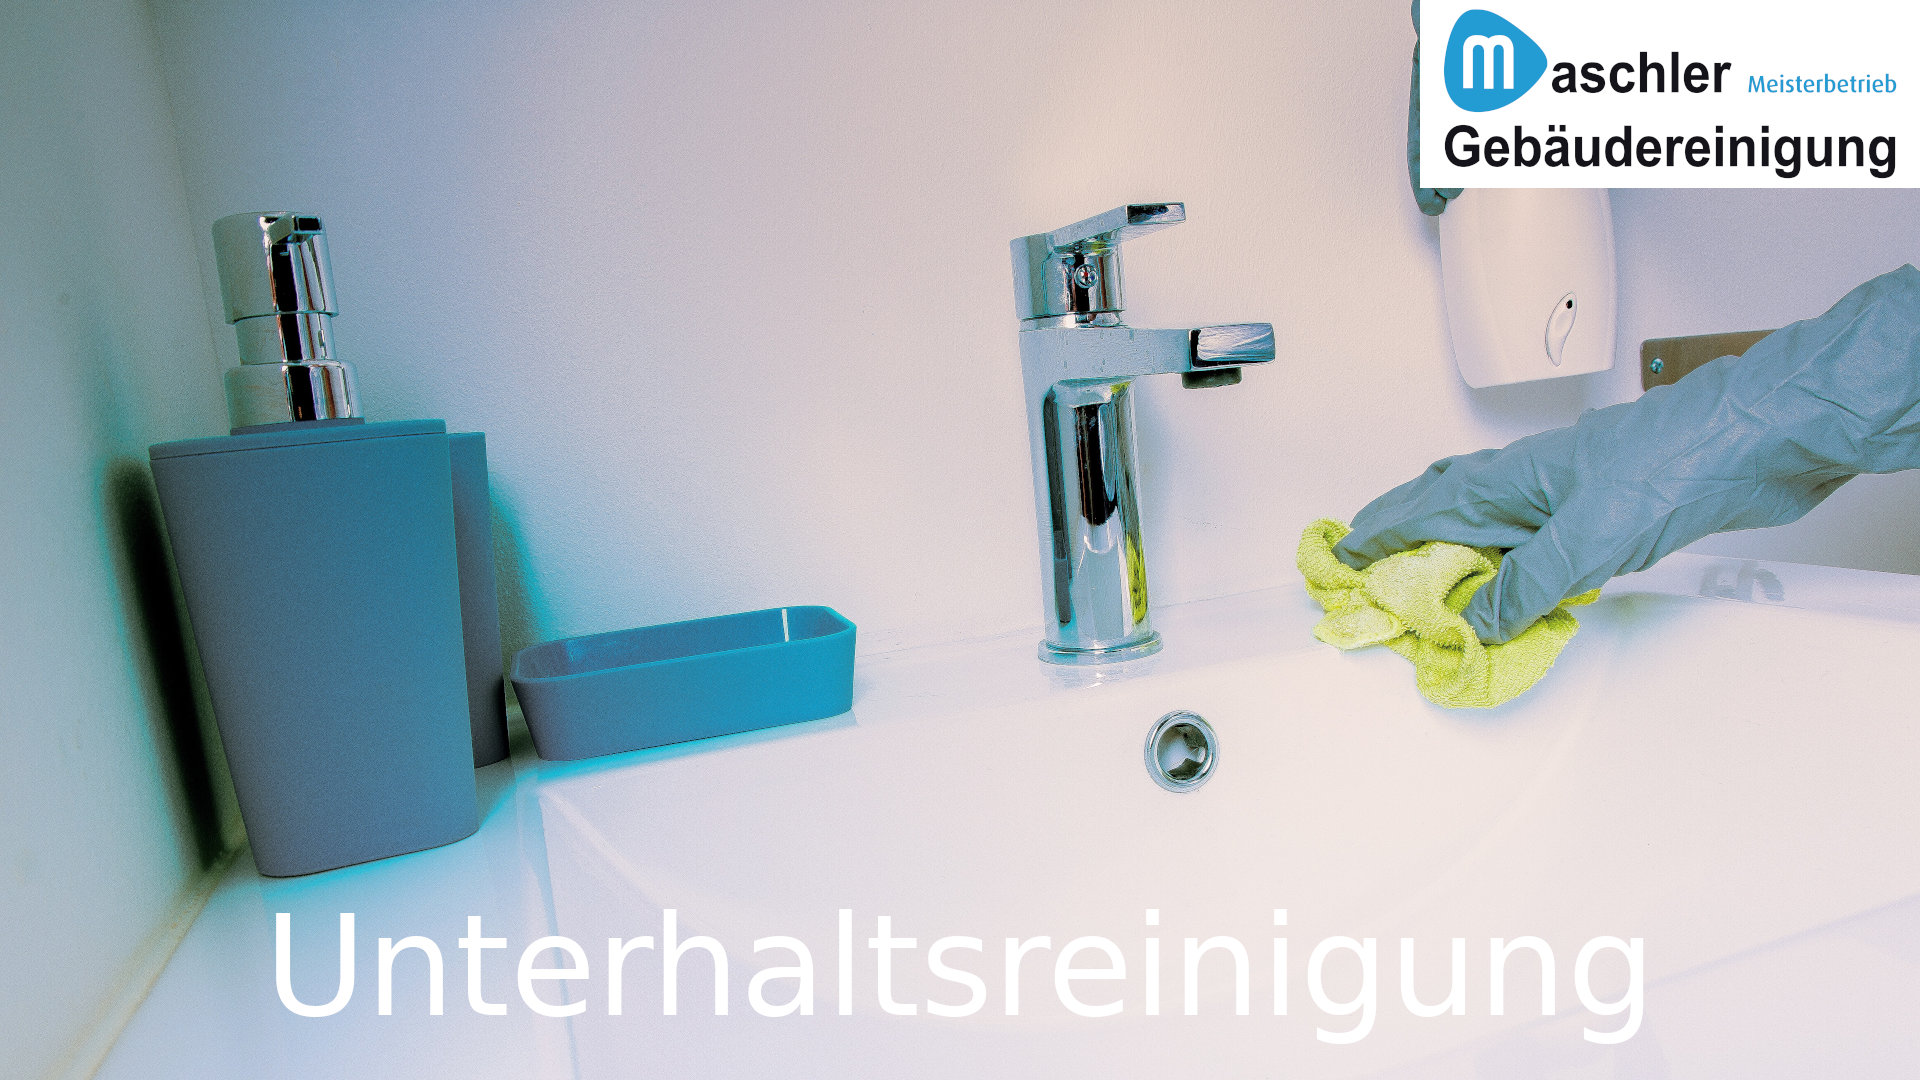 Unterhaltsreinigung in Bad & WC - Gebäudereinigung Maschler Schwerin